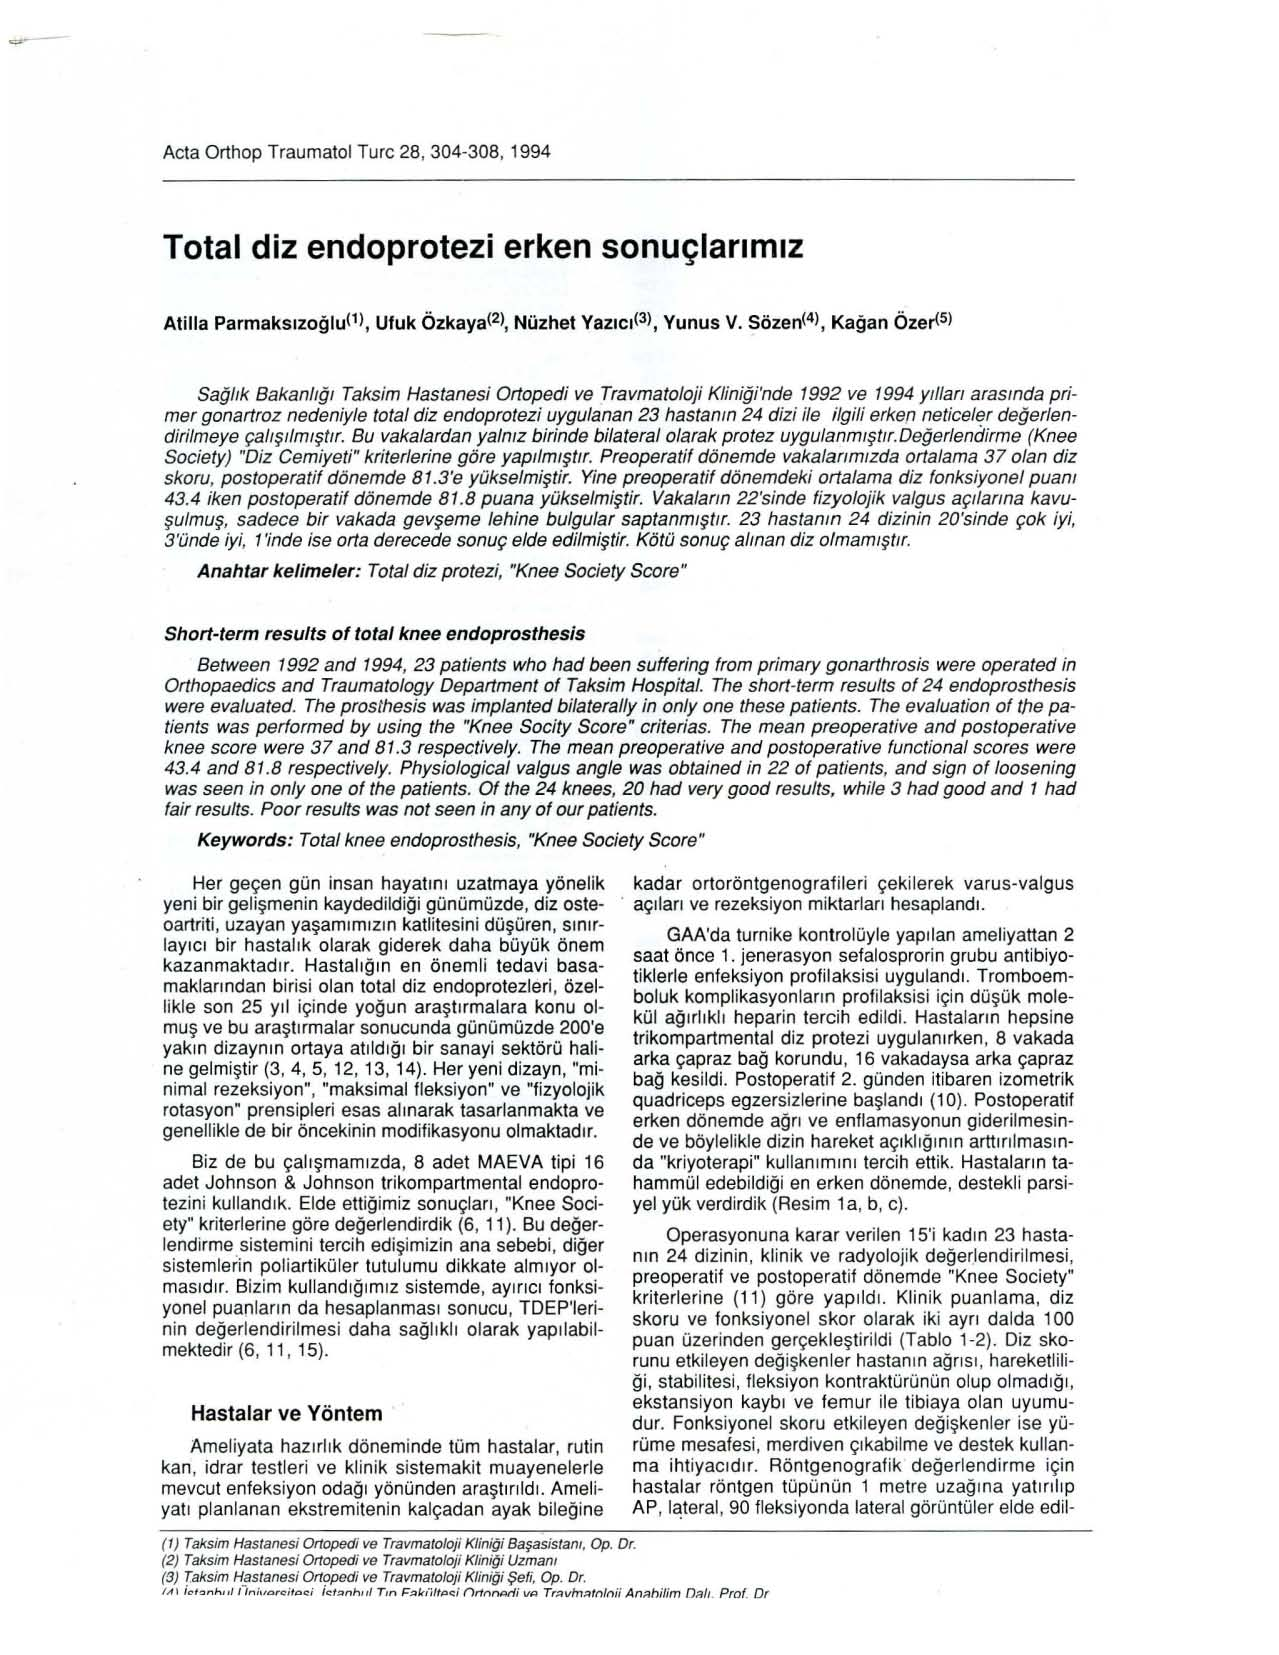 Acta Orthop Traumatol Turc 28, 304-308, 1994 Total diz endoprotezi erken sonuçlanmız Atilla Parmaksızoğlu(1), Ufuk ÖZkaya(2), Nüzhet Yazıcl(3), Yunus V.